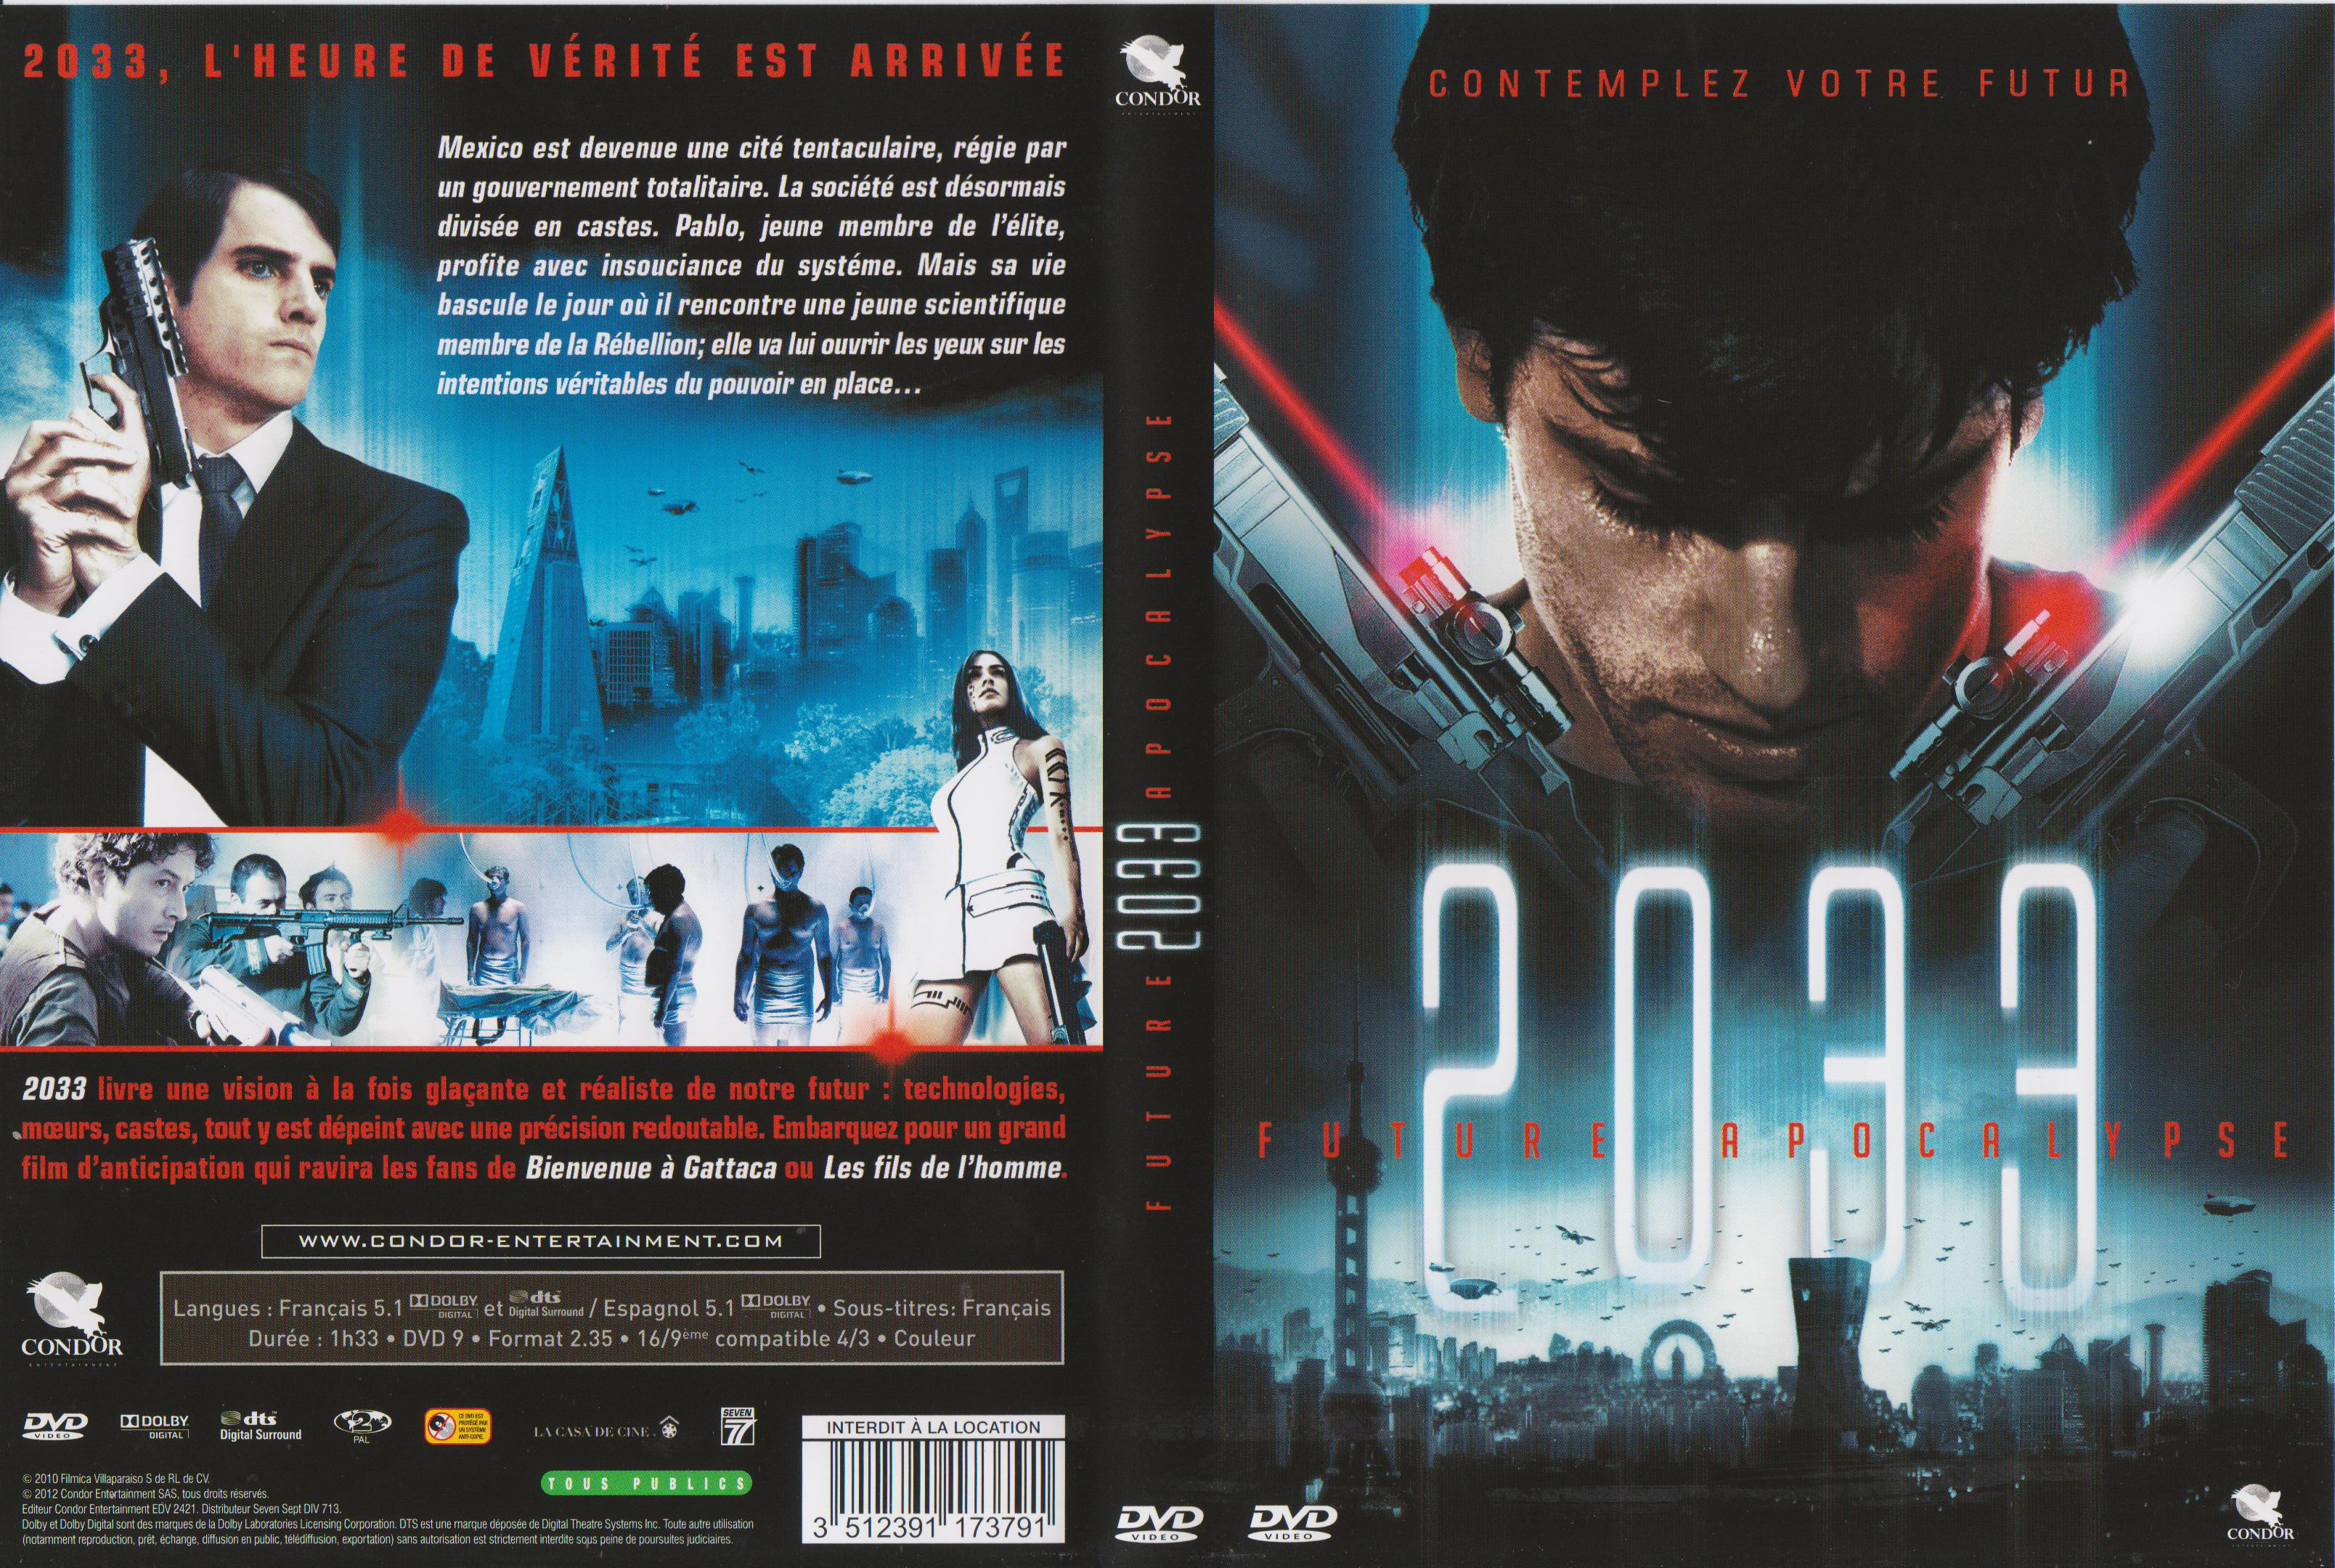 Jaquette DVD 2033 Future Apocalypse